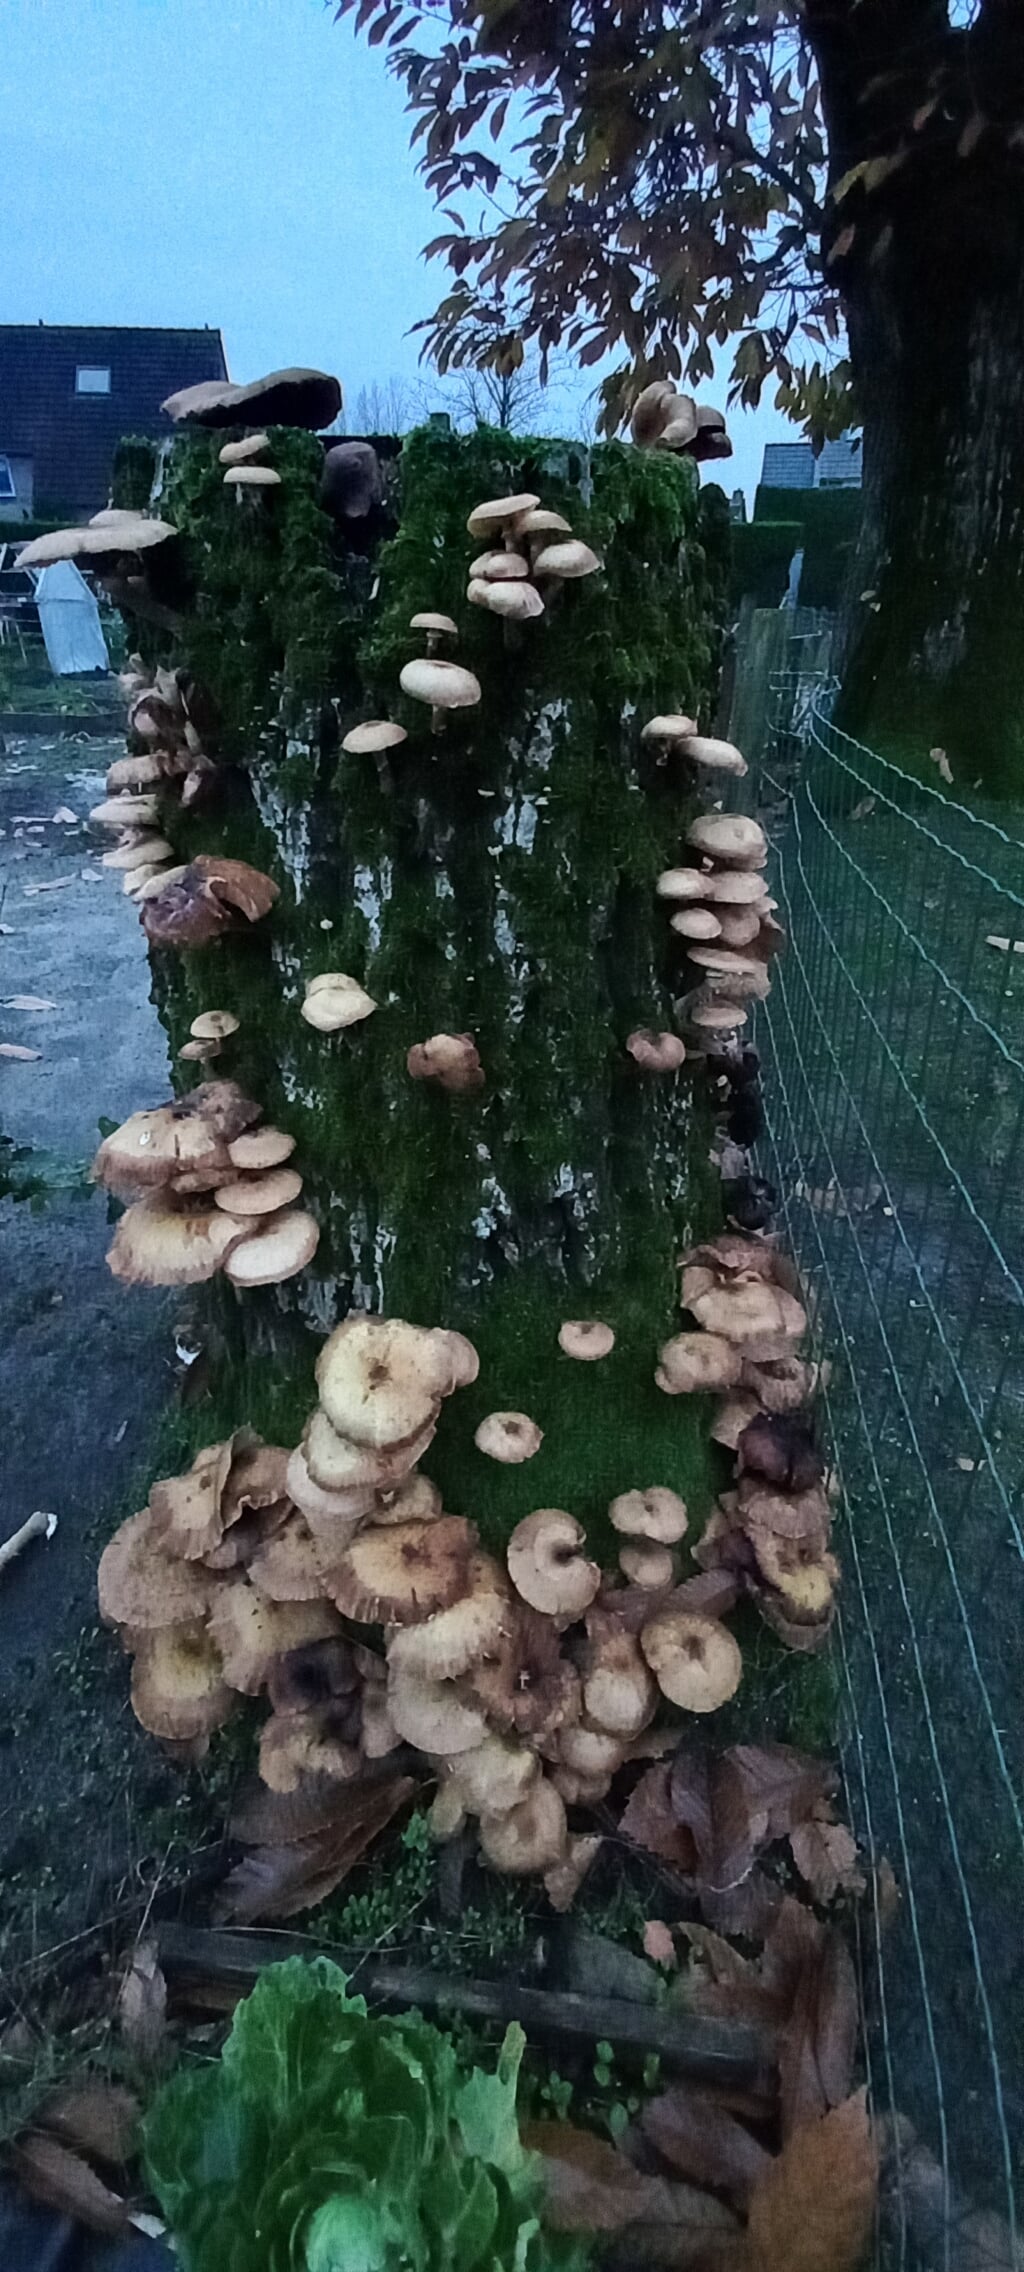 De paddenstoelen schieten uit de grond